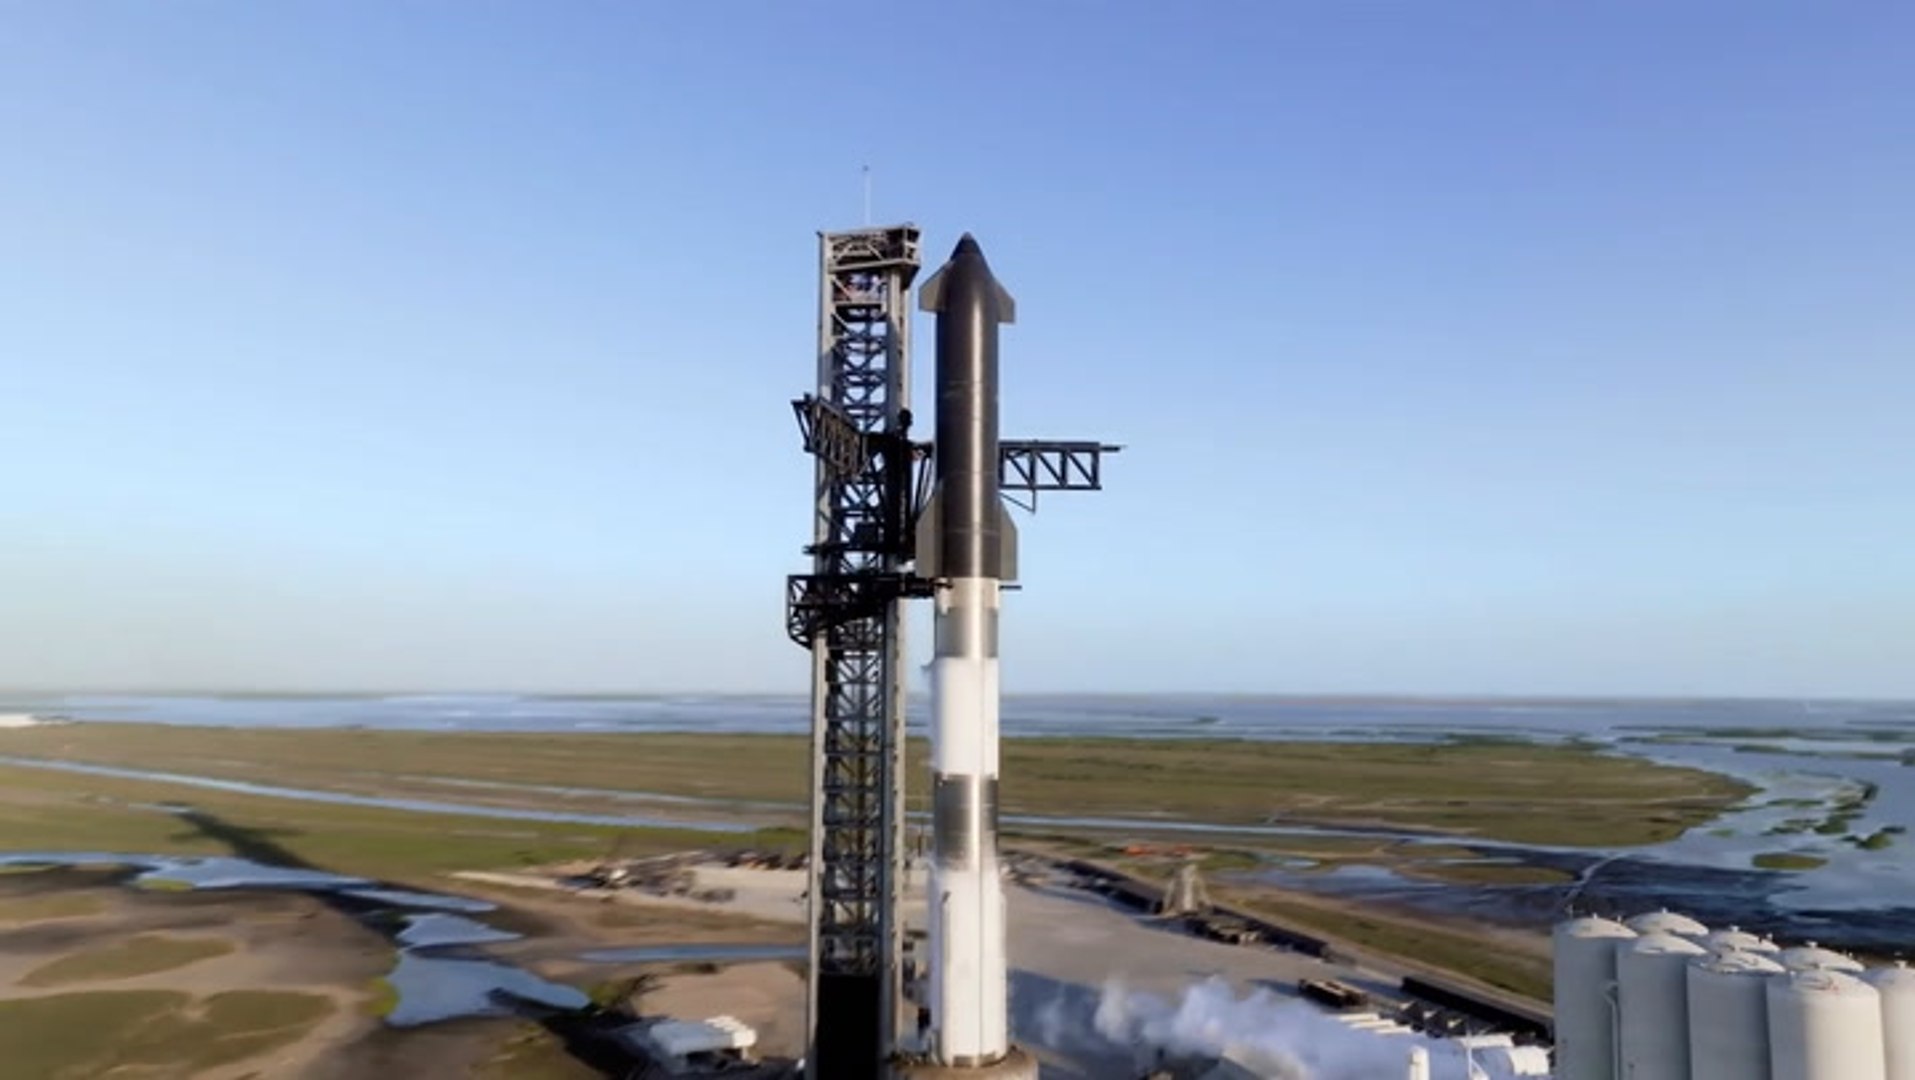 Space X quer internet no espaço - Hoje no TecMundo - video Dailymotion